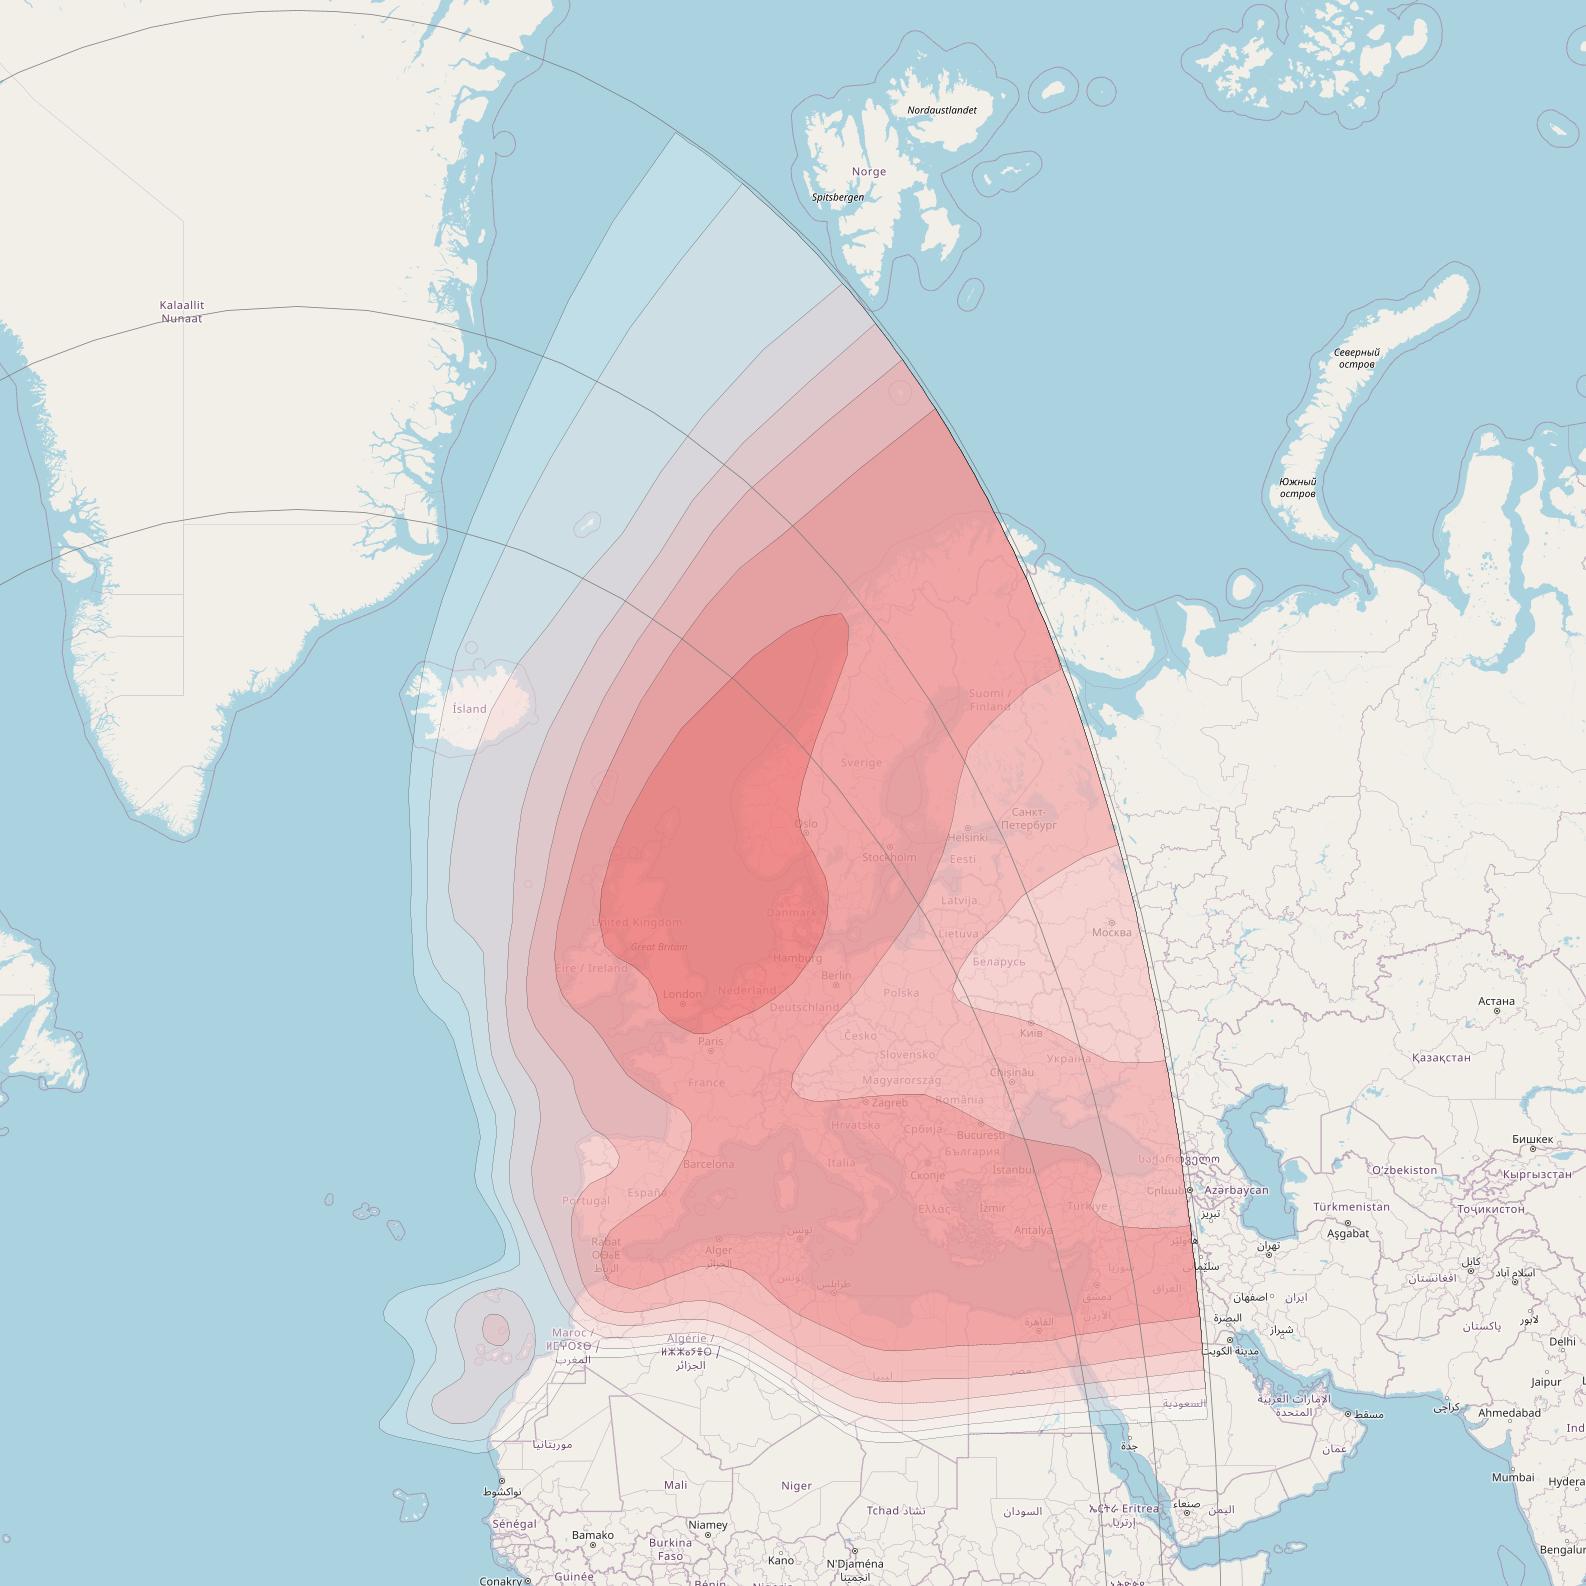 Intelsat 35e at 34° W downlink Ku-band Europe/Mediterranean beam coverage map